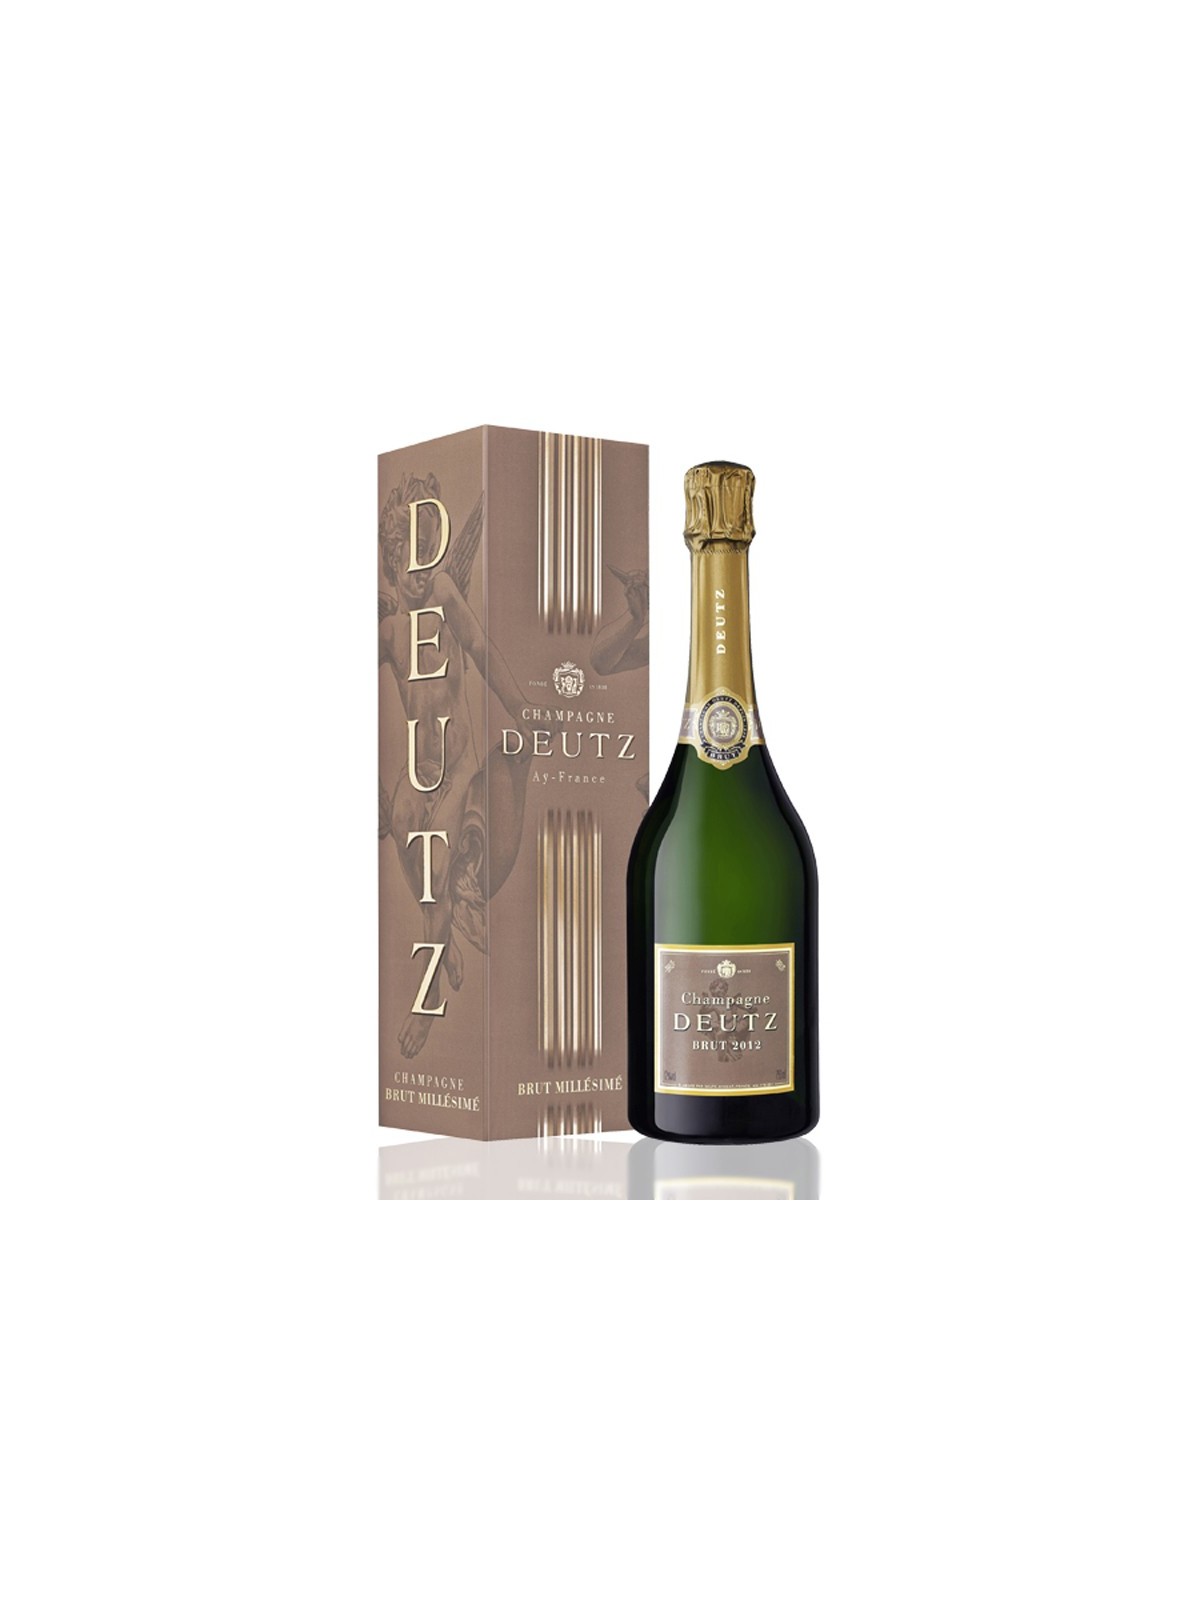 80-003 Champagne DEUTZ Brut Millésimé 2007 personnalisé